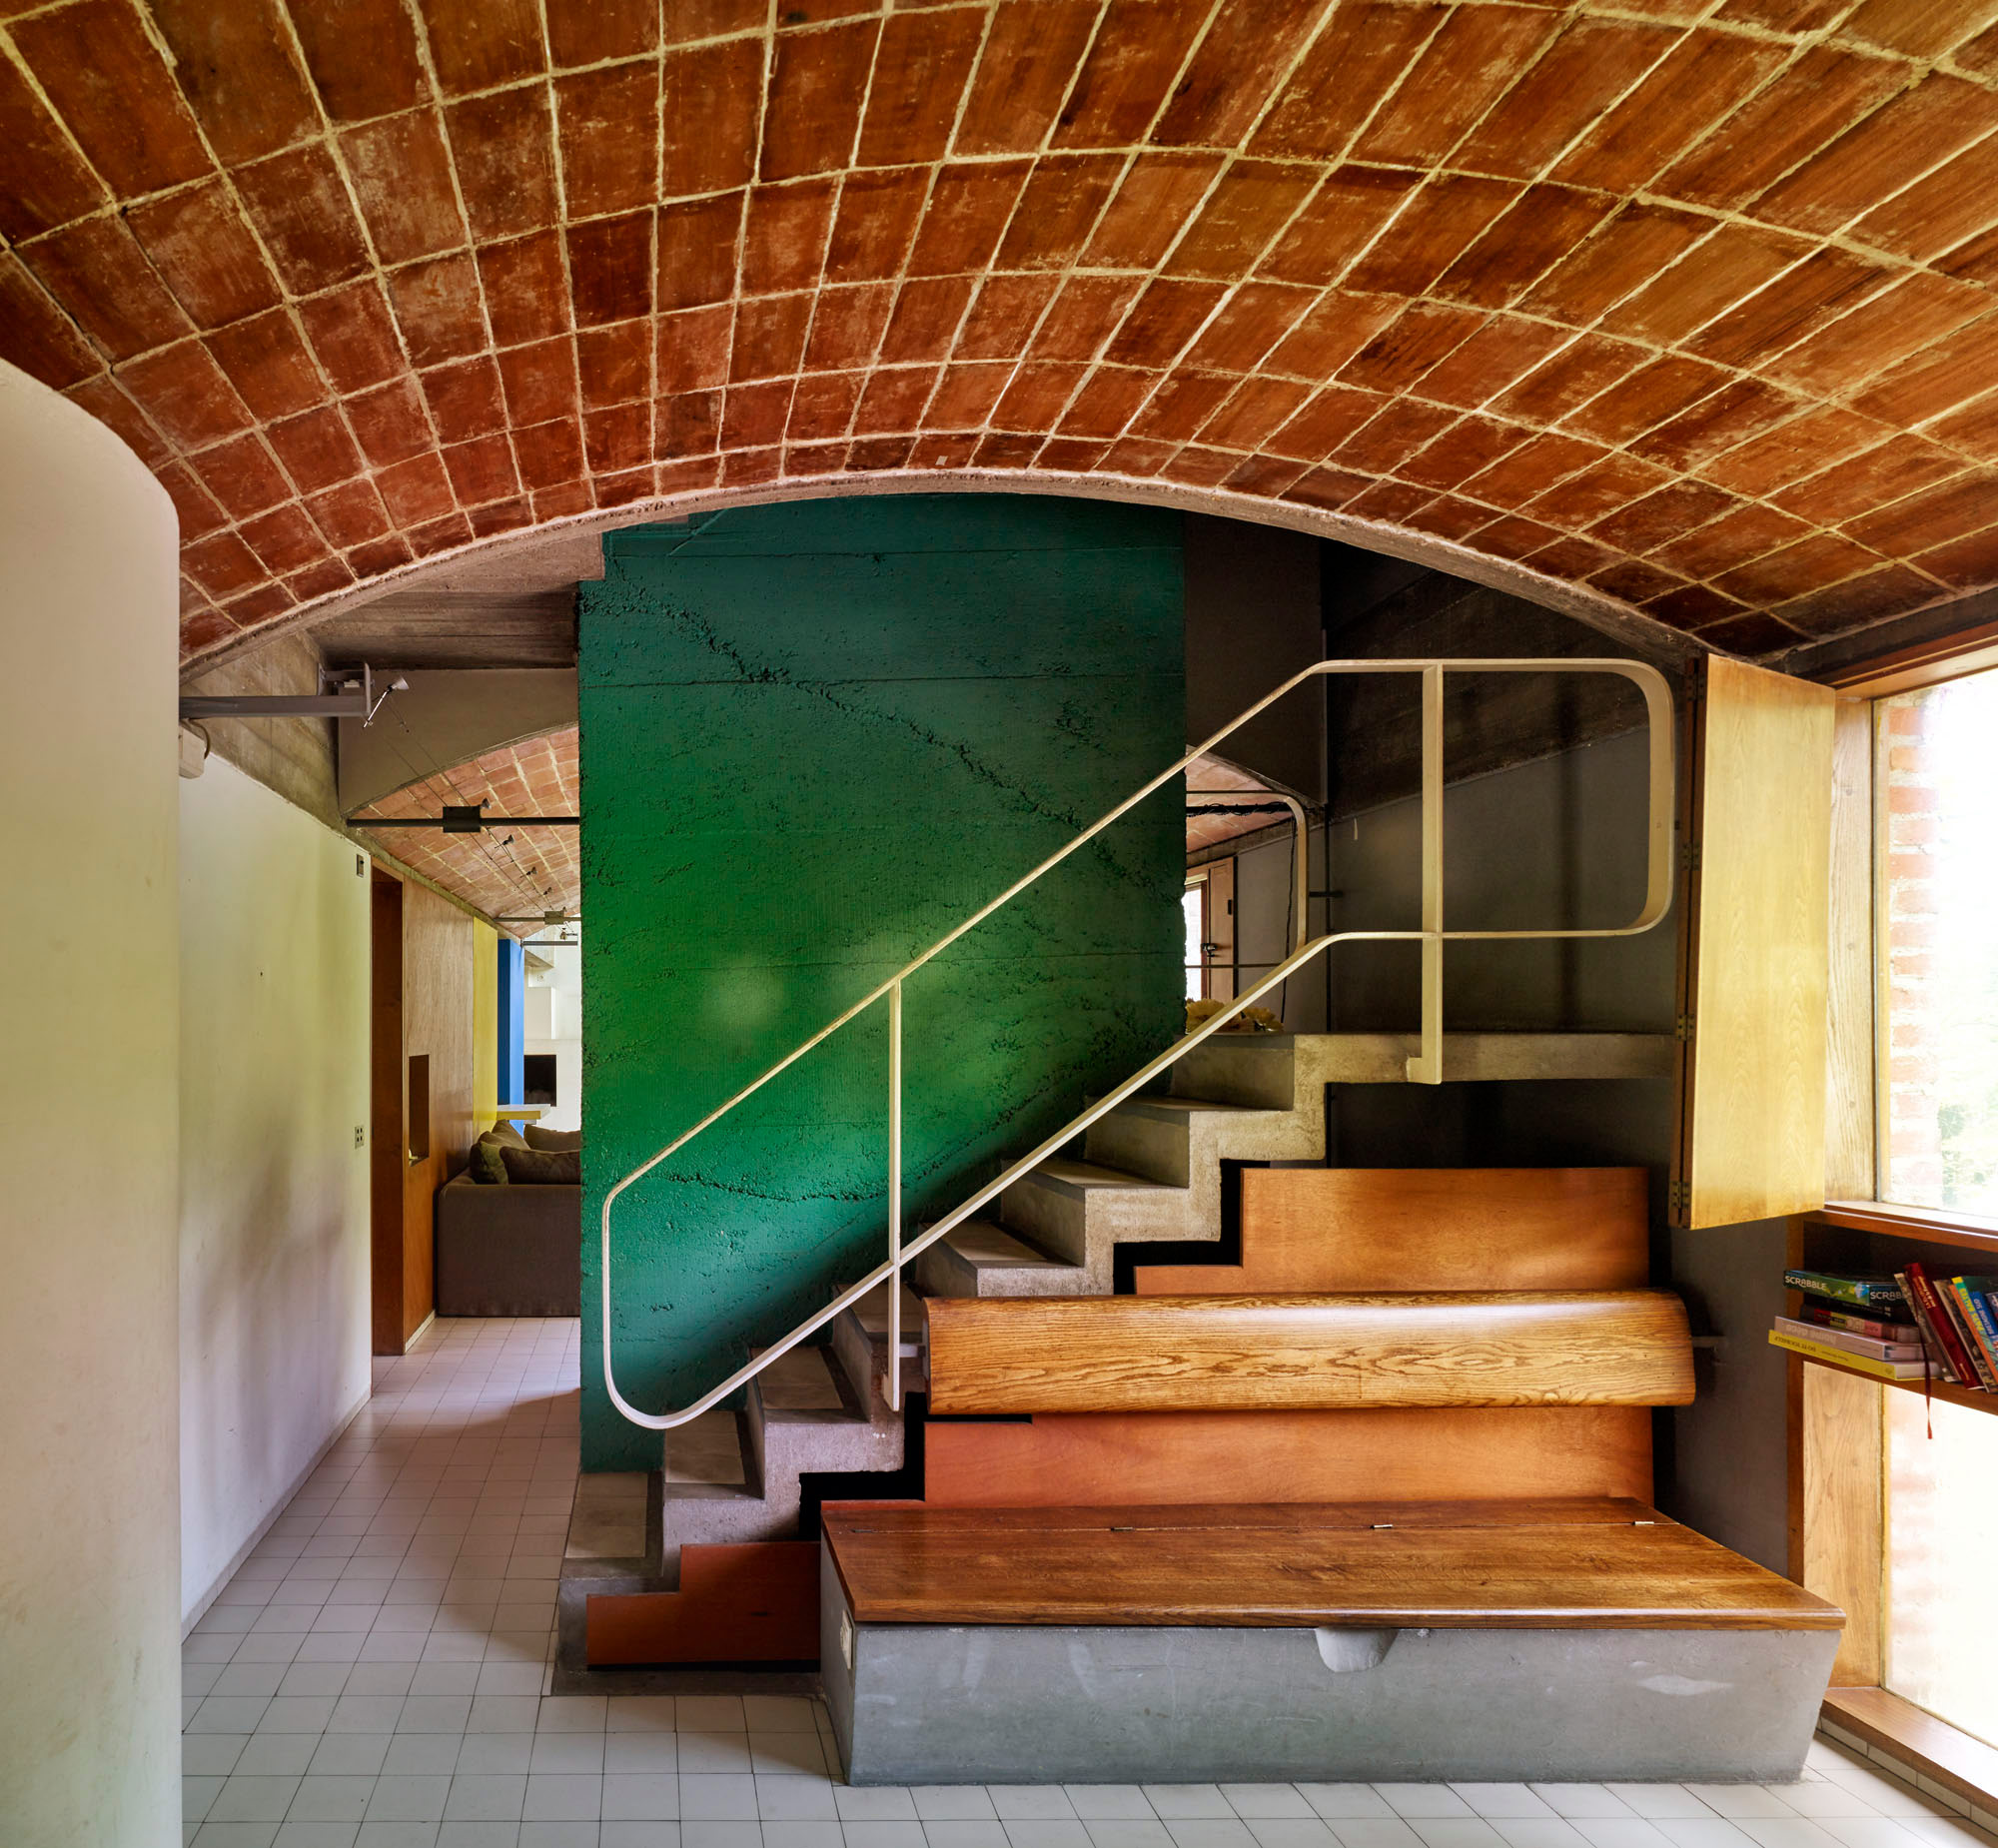 Maison Aoul Le Corbusier S Bold